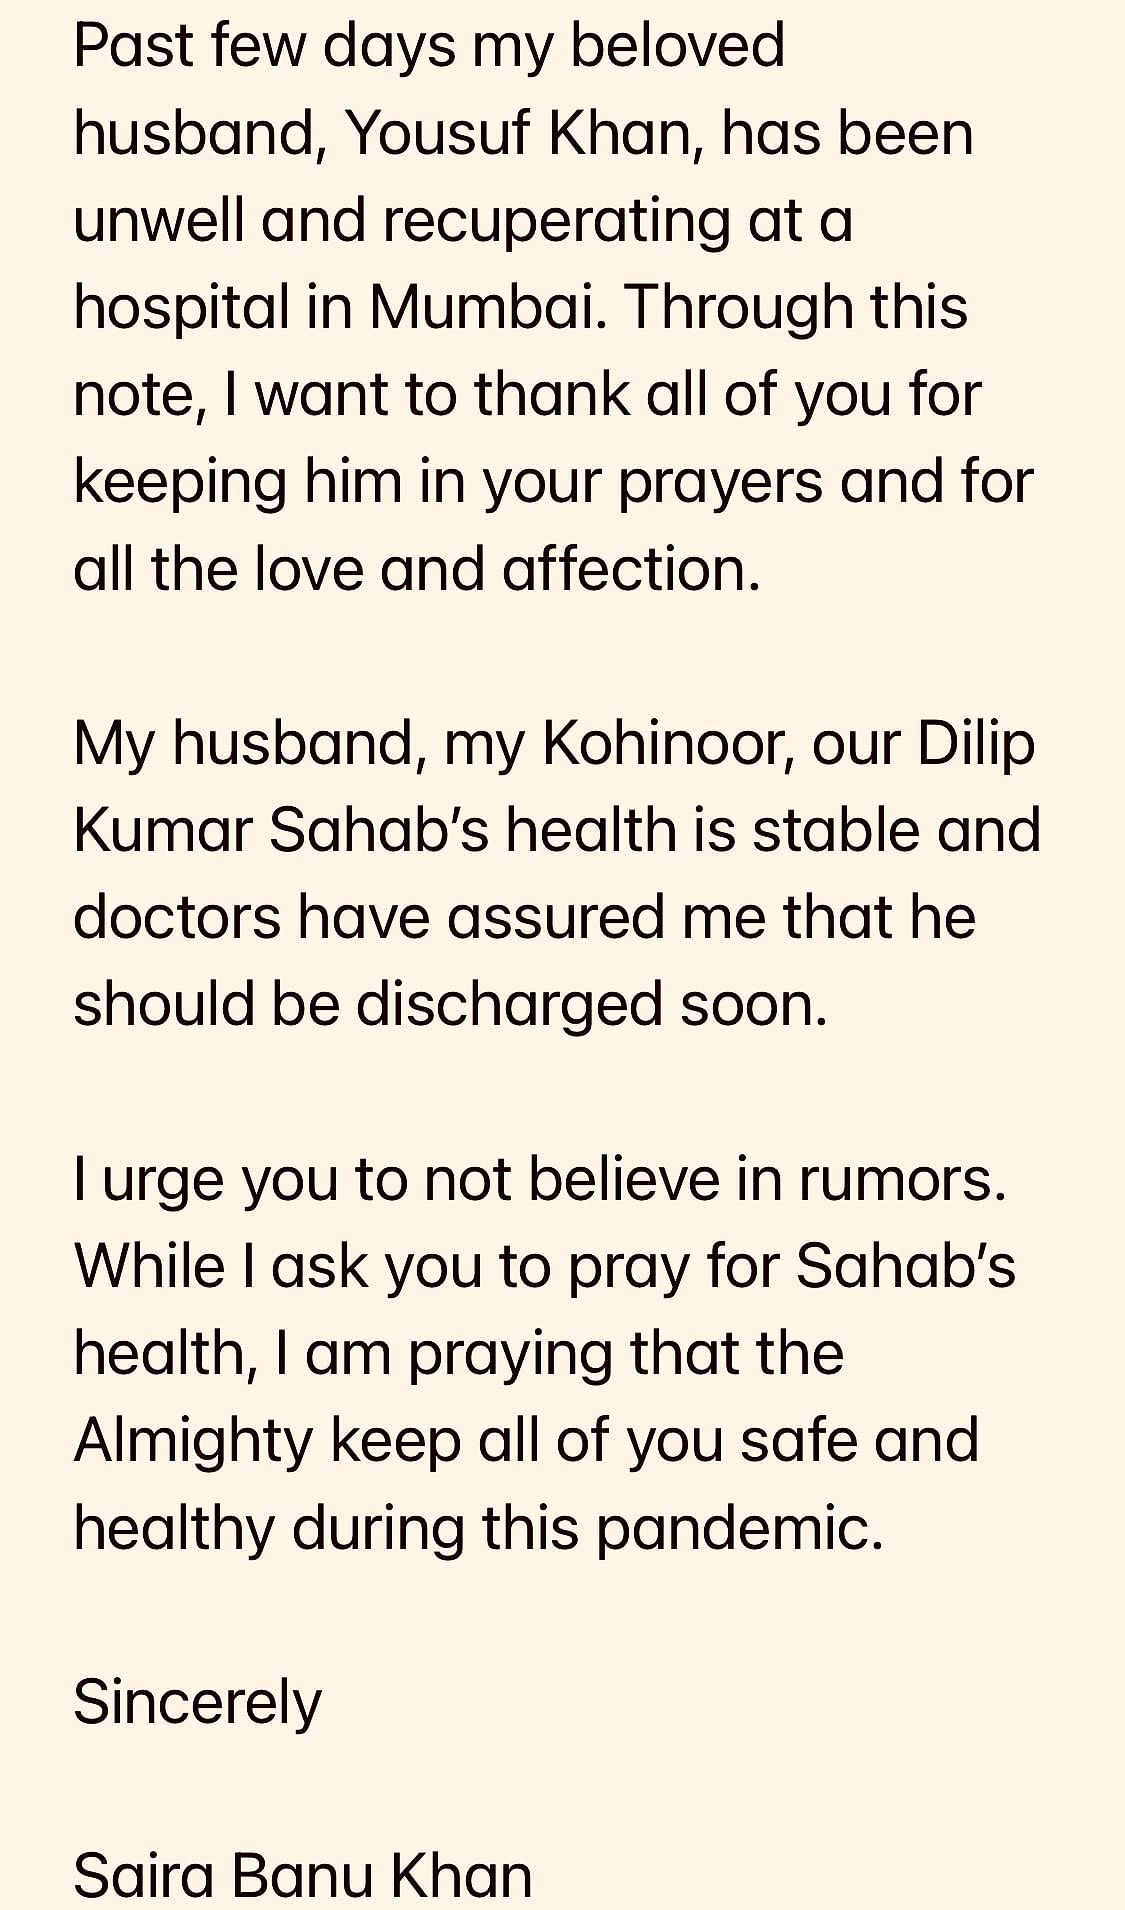 दिलीप कुमार के ऑफिशियल ट्विटर अकाउंट से उनकी पत्नी सायरा बानो का एक मैसेज साझा किया गया है. 